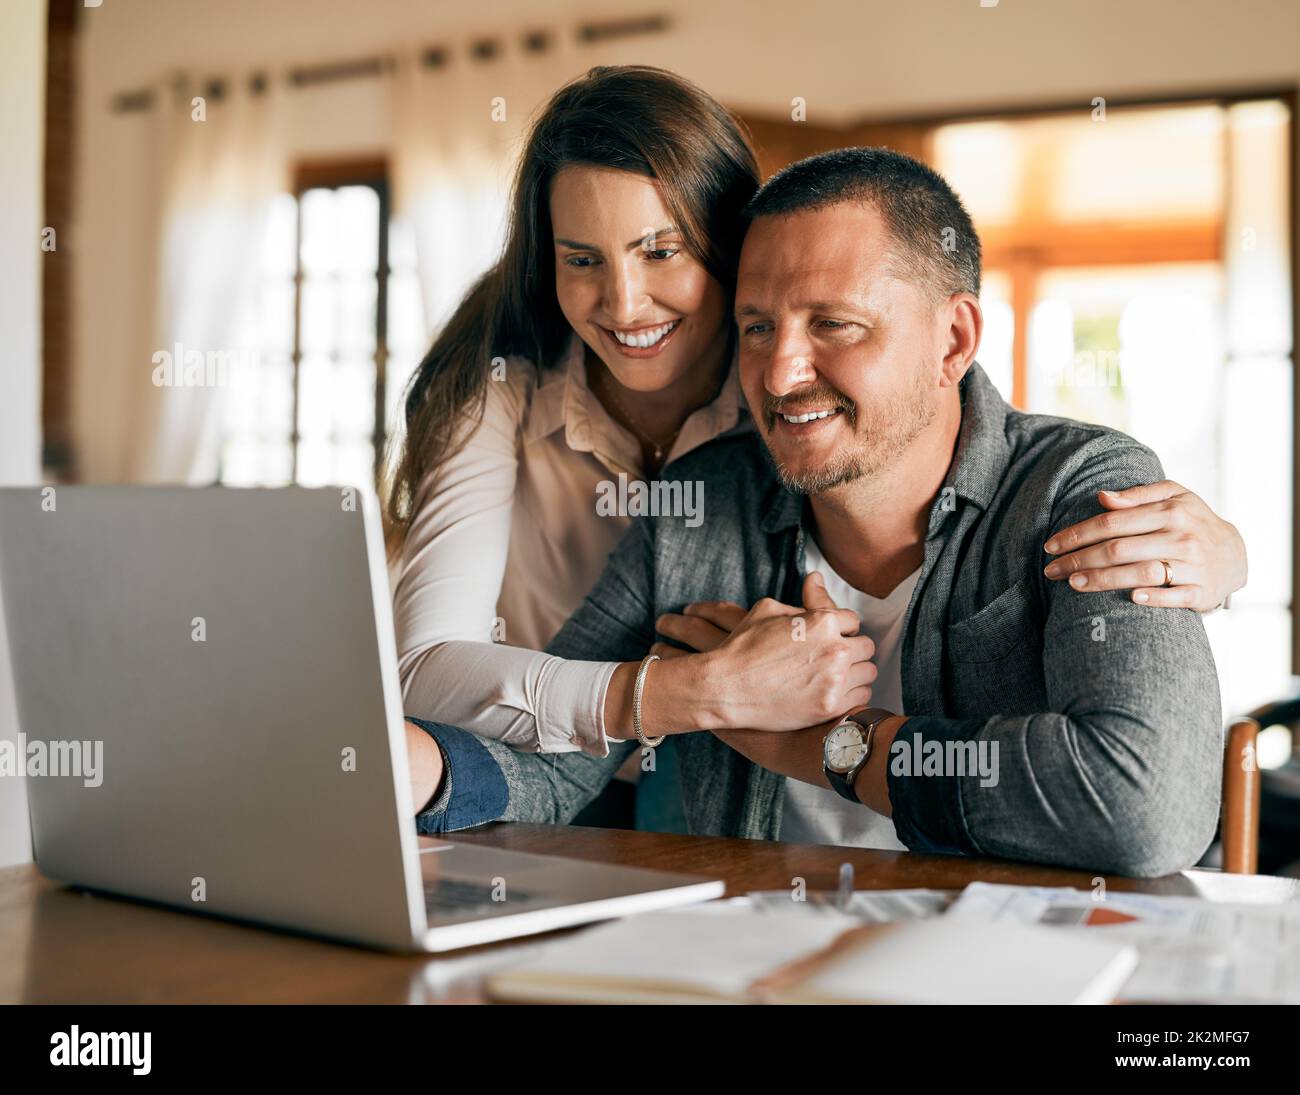 Das monatliche Budget funktioniert gut. Eine kurze Aufnahme eines Ehepaares, das zu Hause sein Budget plant. Stockfoto